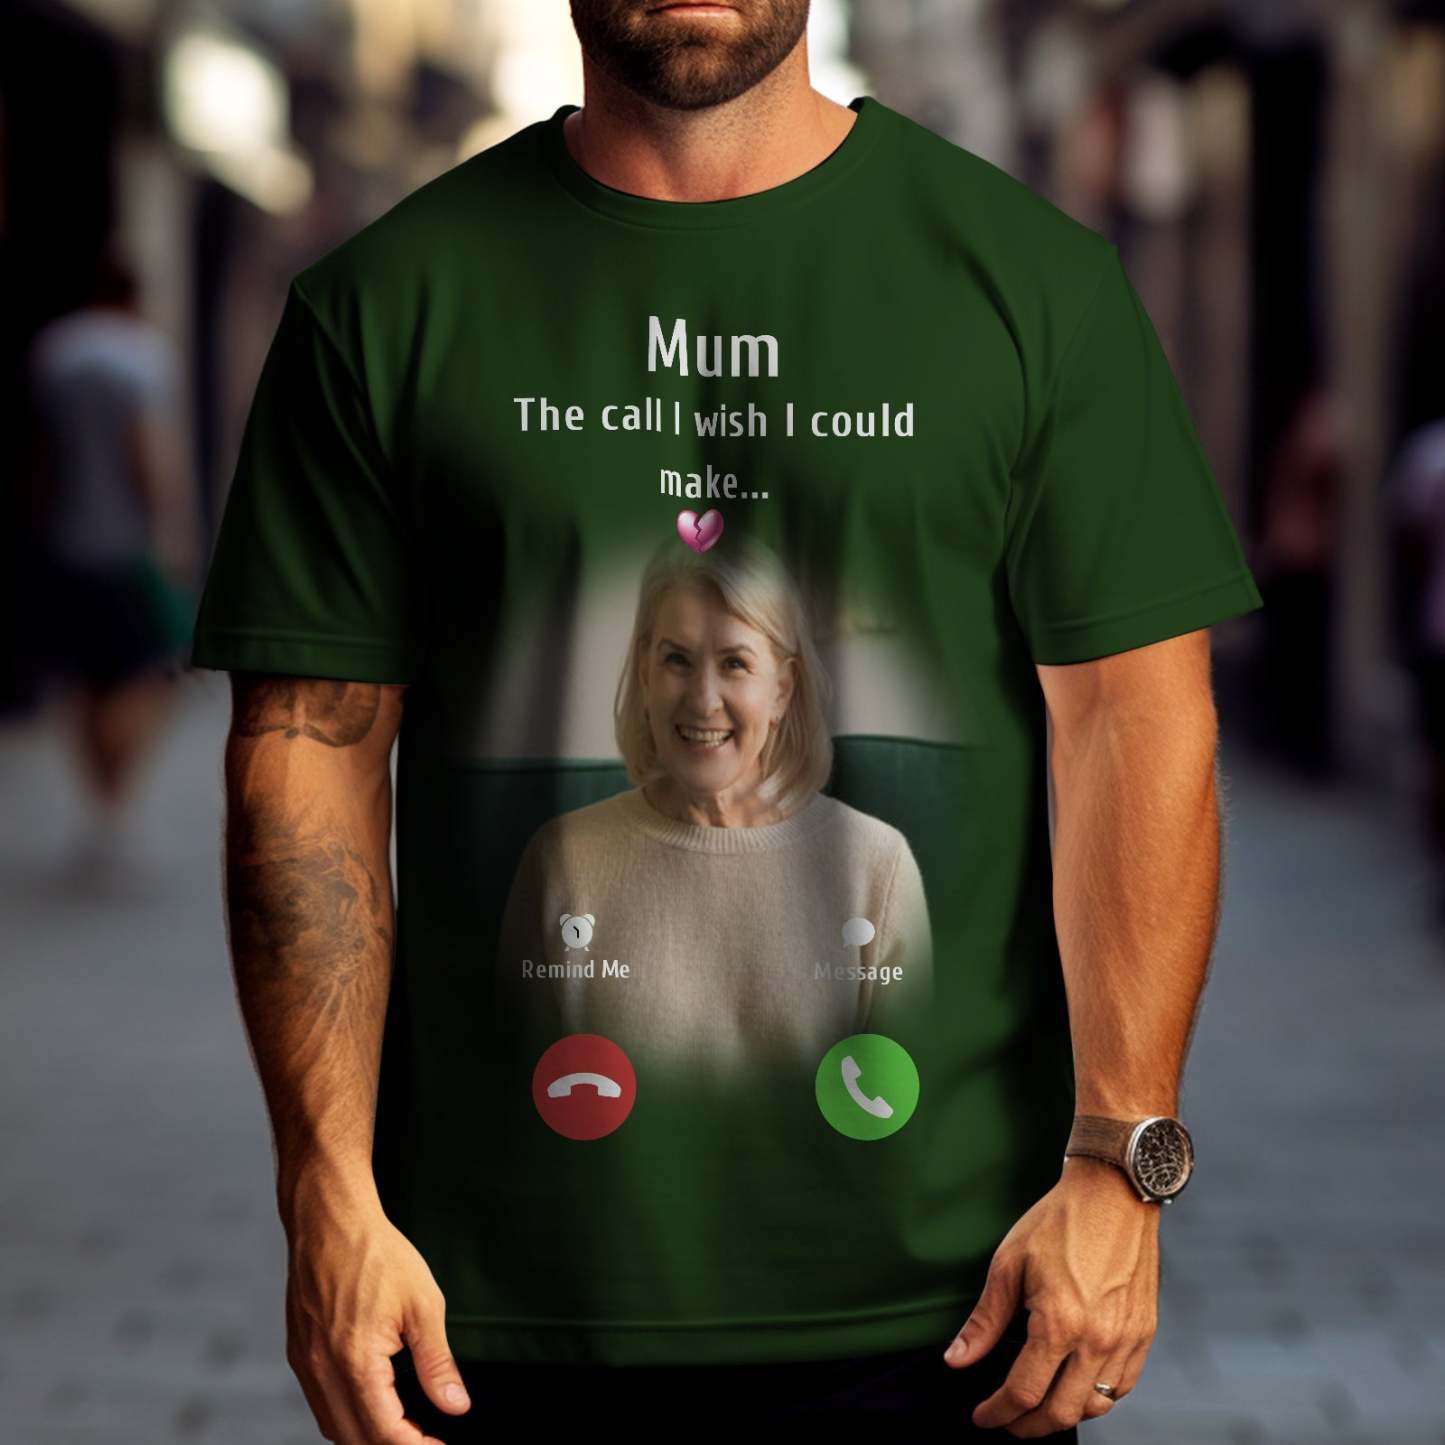 Photo Personnalisée Memorial Mom T-shirt Memorial Gift Idea Chemise Personnalisée L'appel Que J'aimerais Pouvoir Faire -